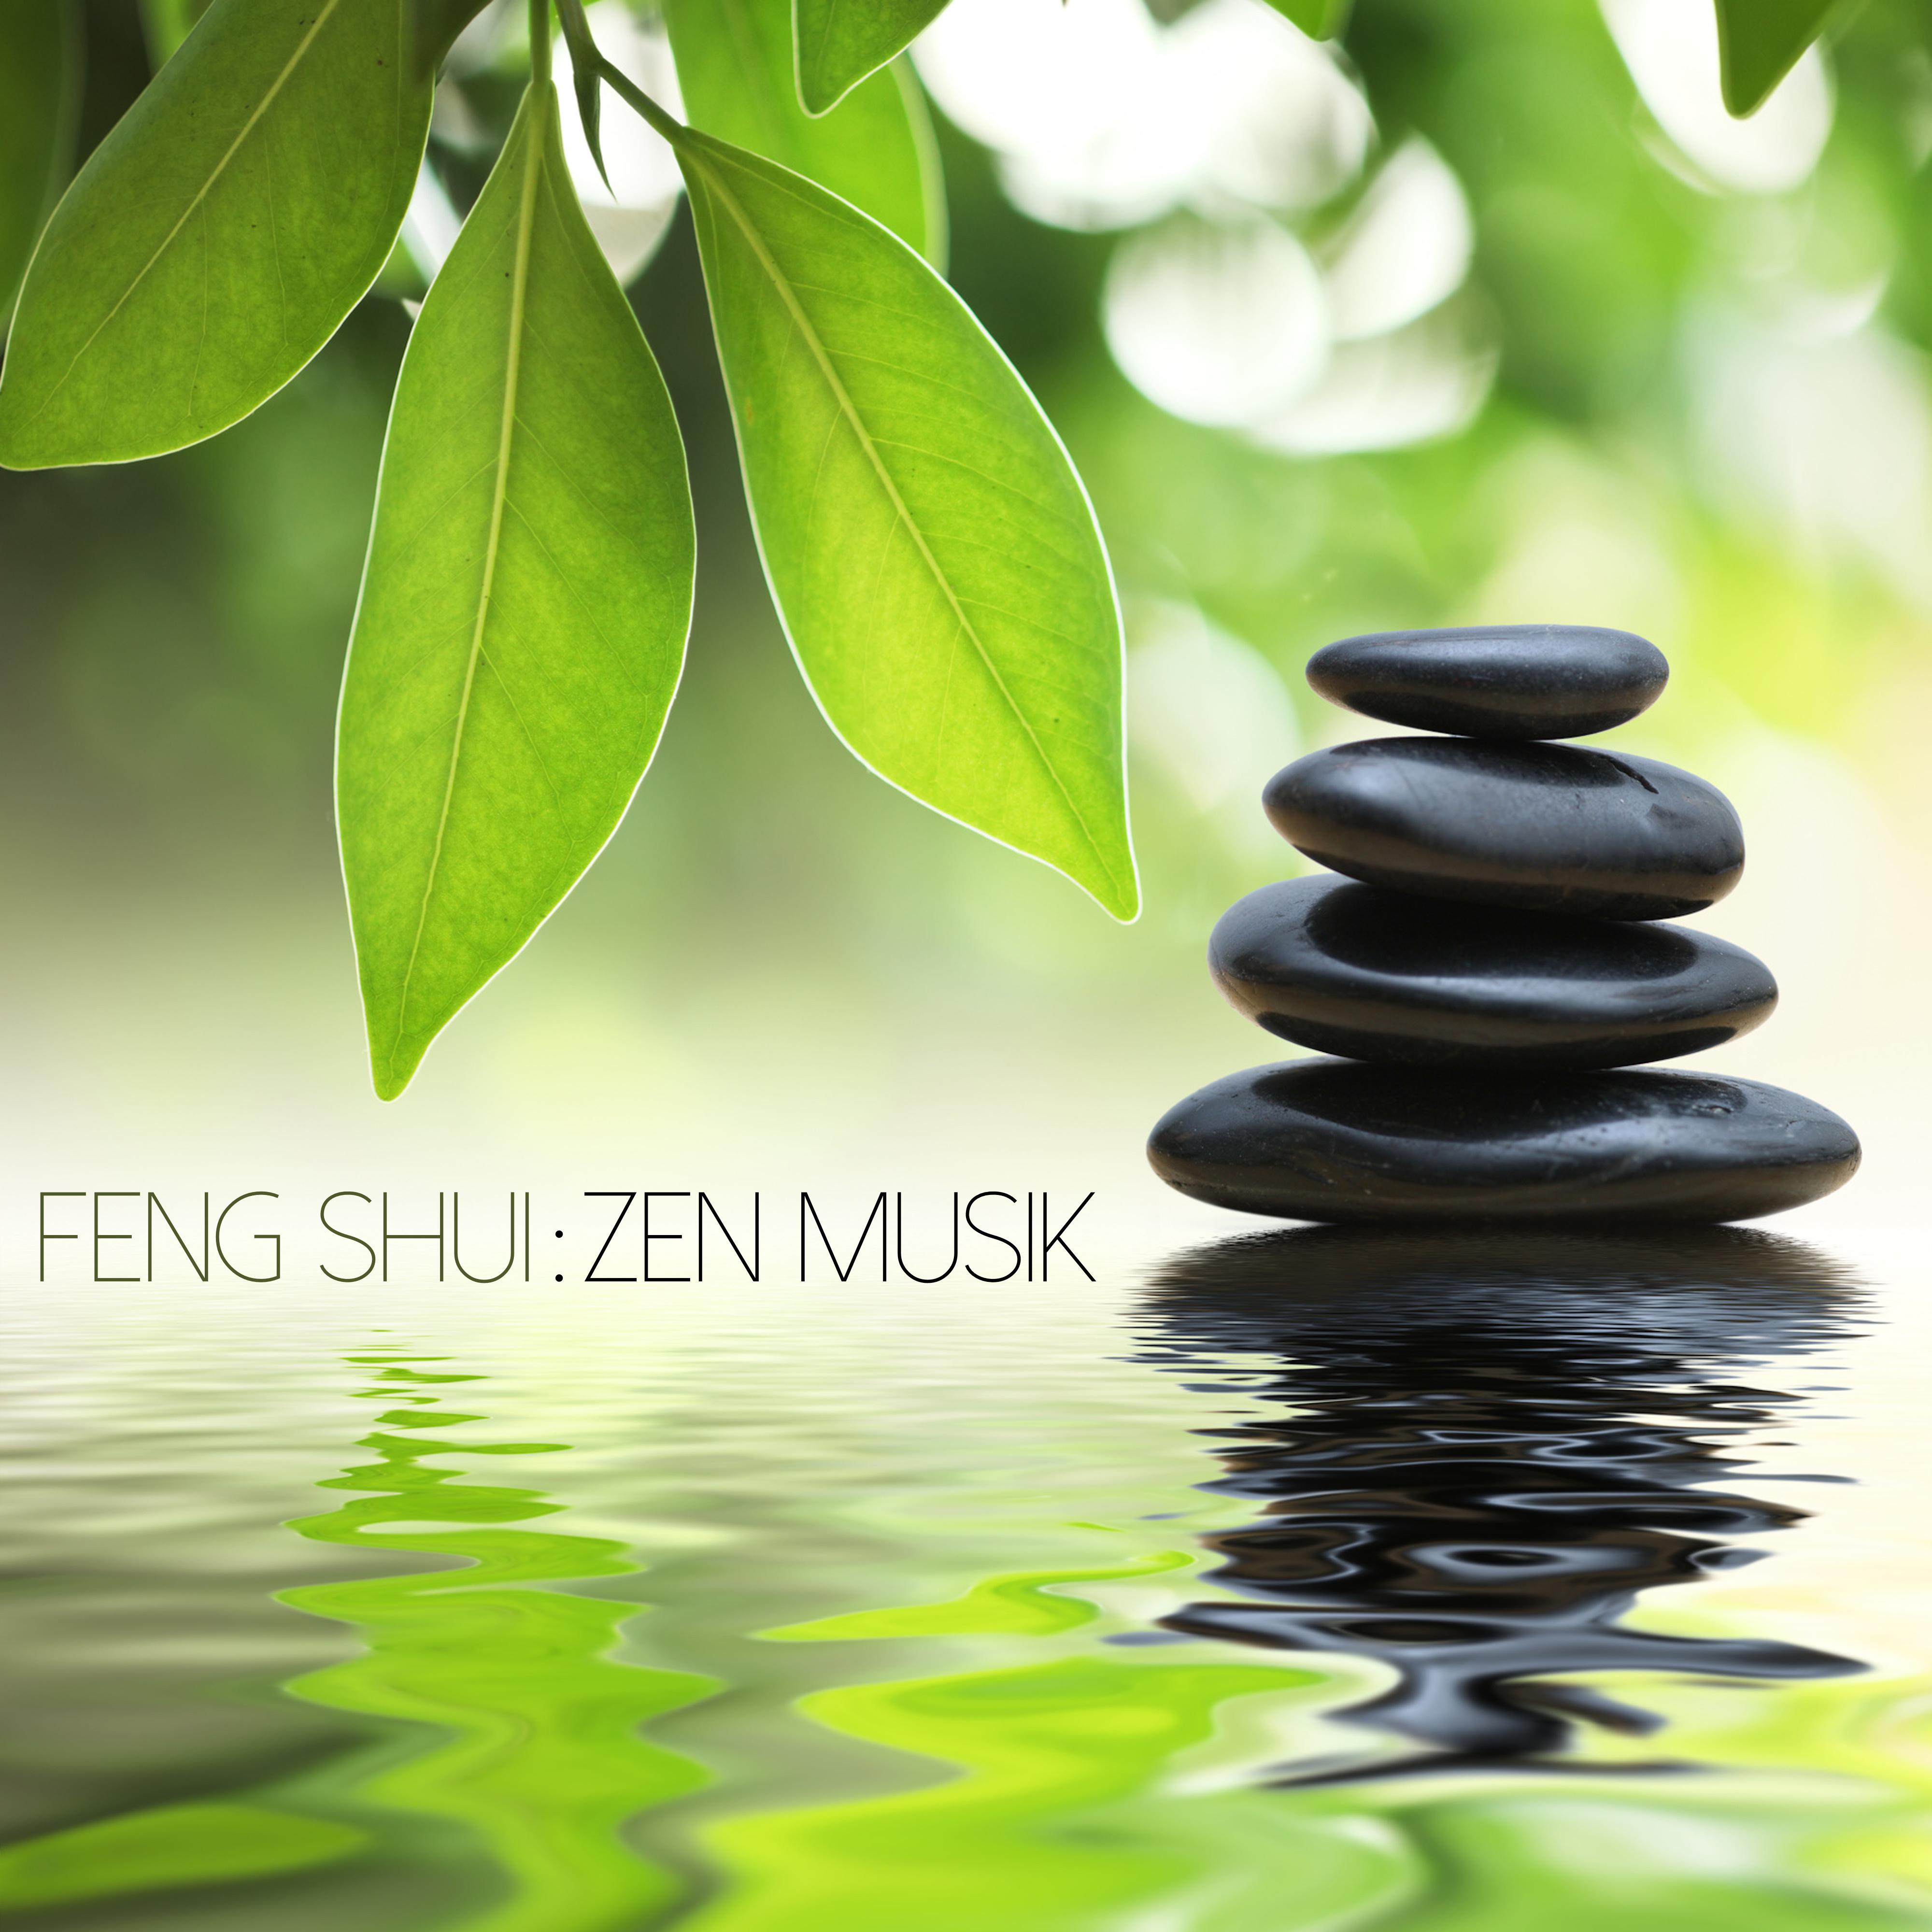 Feng Shui Zen Musik  Ruhige Noten und Traumhafte Meditationsmusik zur Entspannung, Harmonische Musik fü r Klangtherapie im Leben